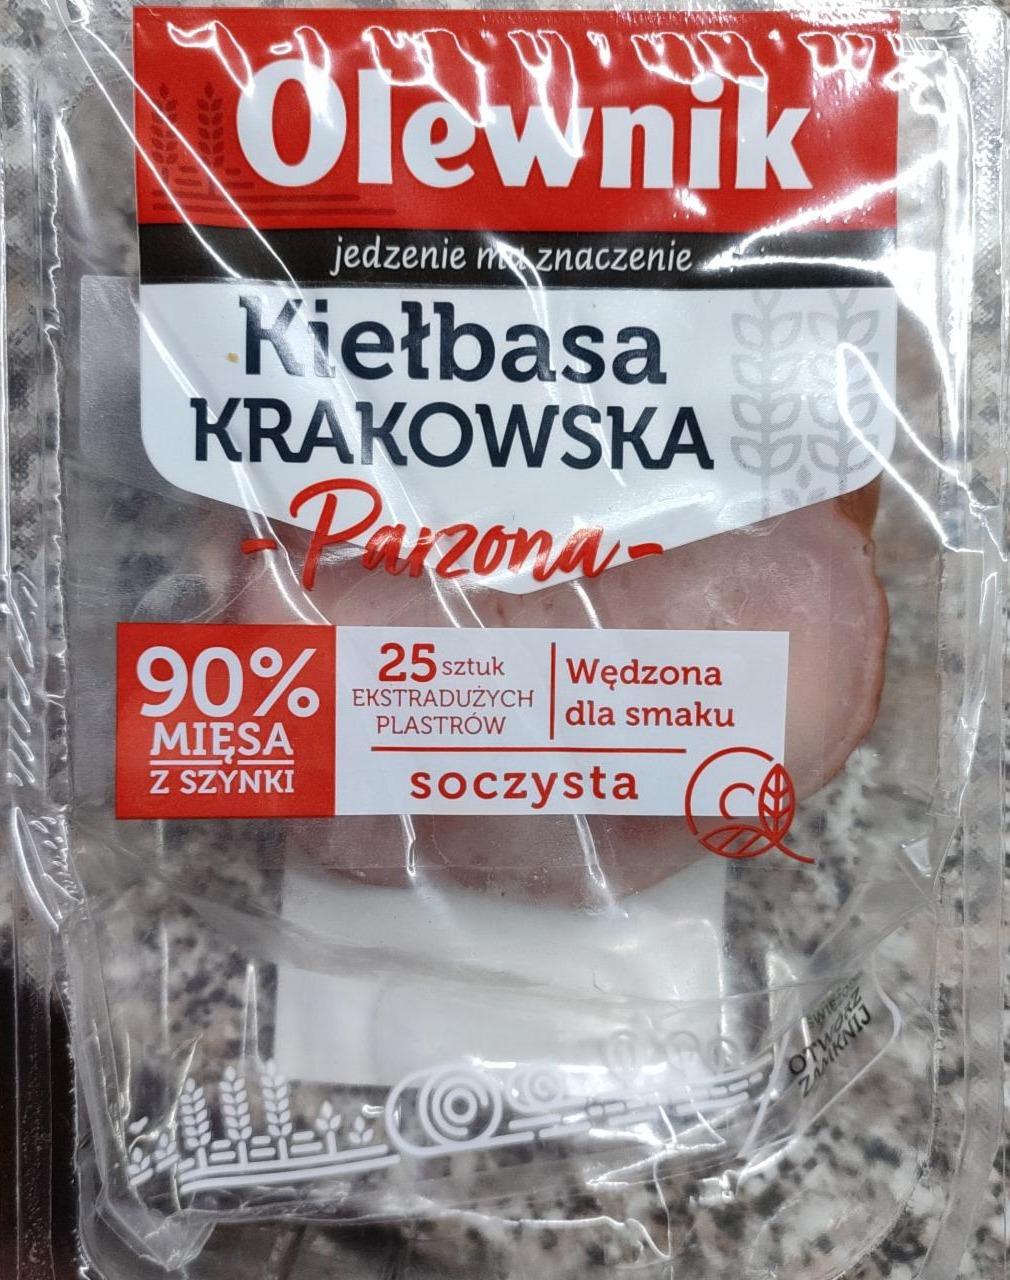 Zdjęcia - Kiełbasa Krakowska Parzona Olewnik